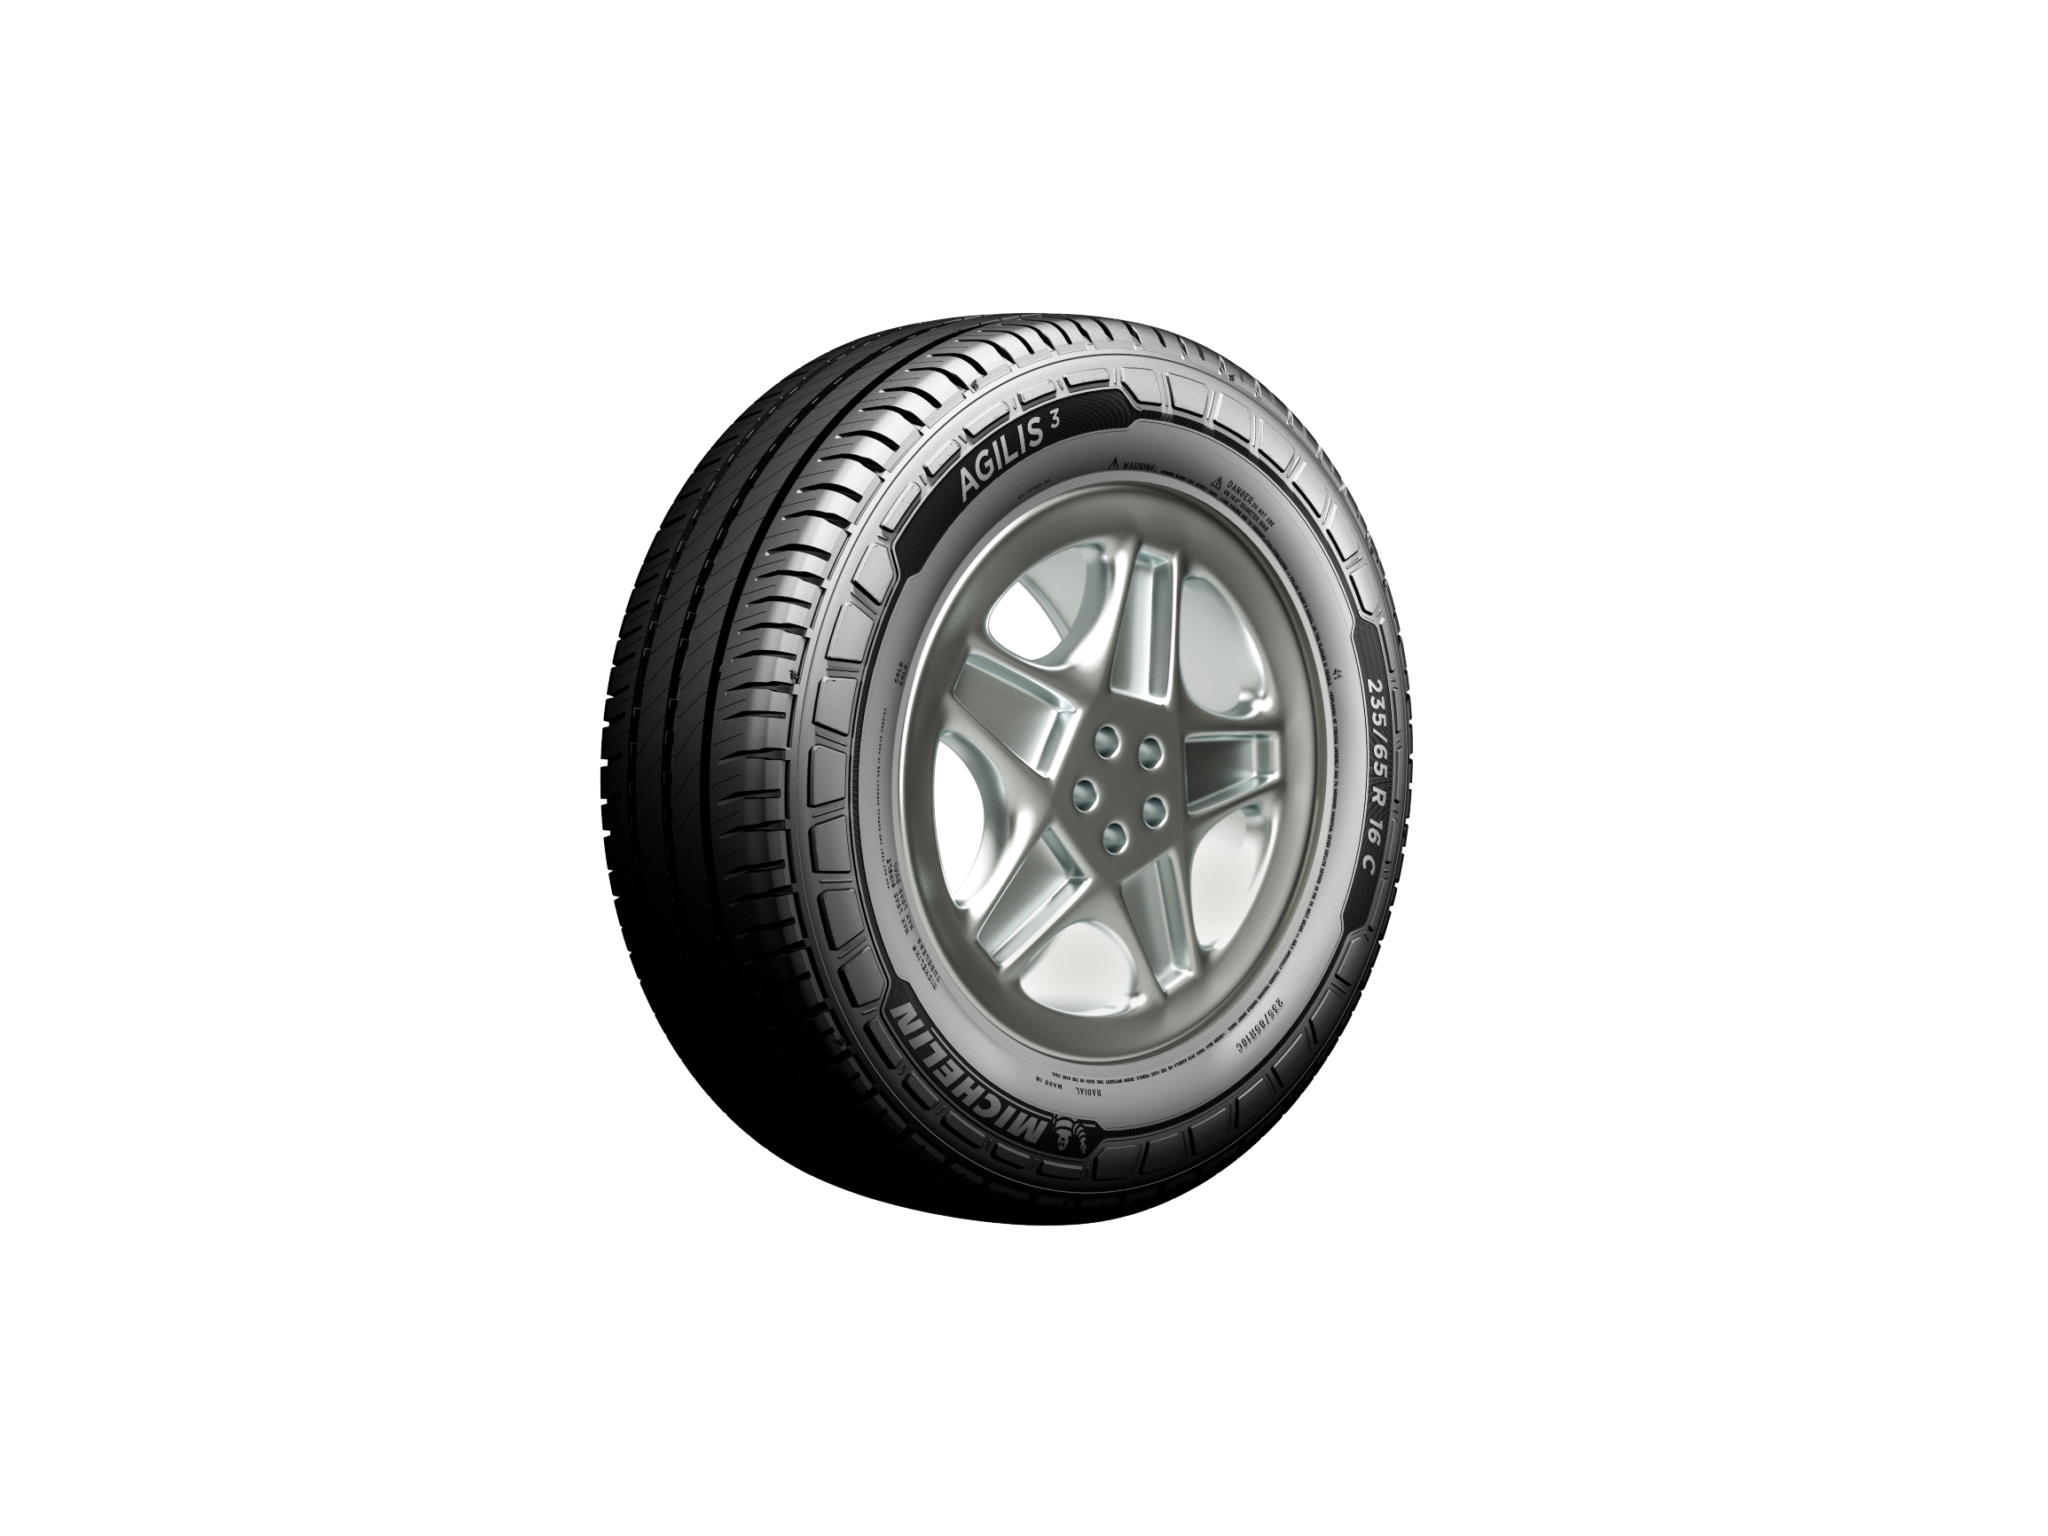 Νέο ελαστικό Michelin Agilis 3 για ελαφρά οχήματα